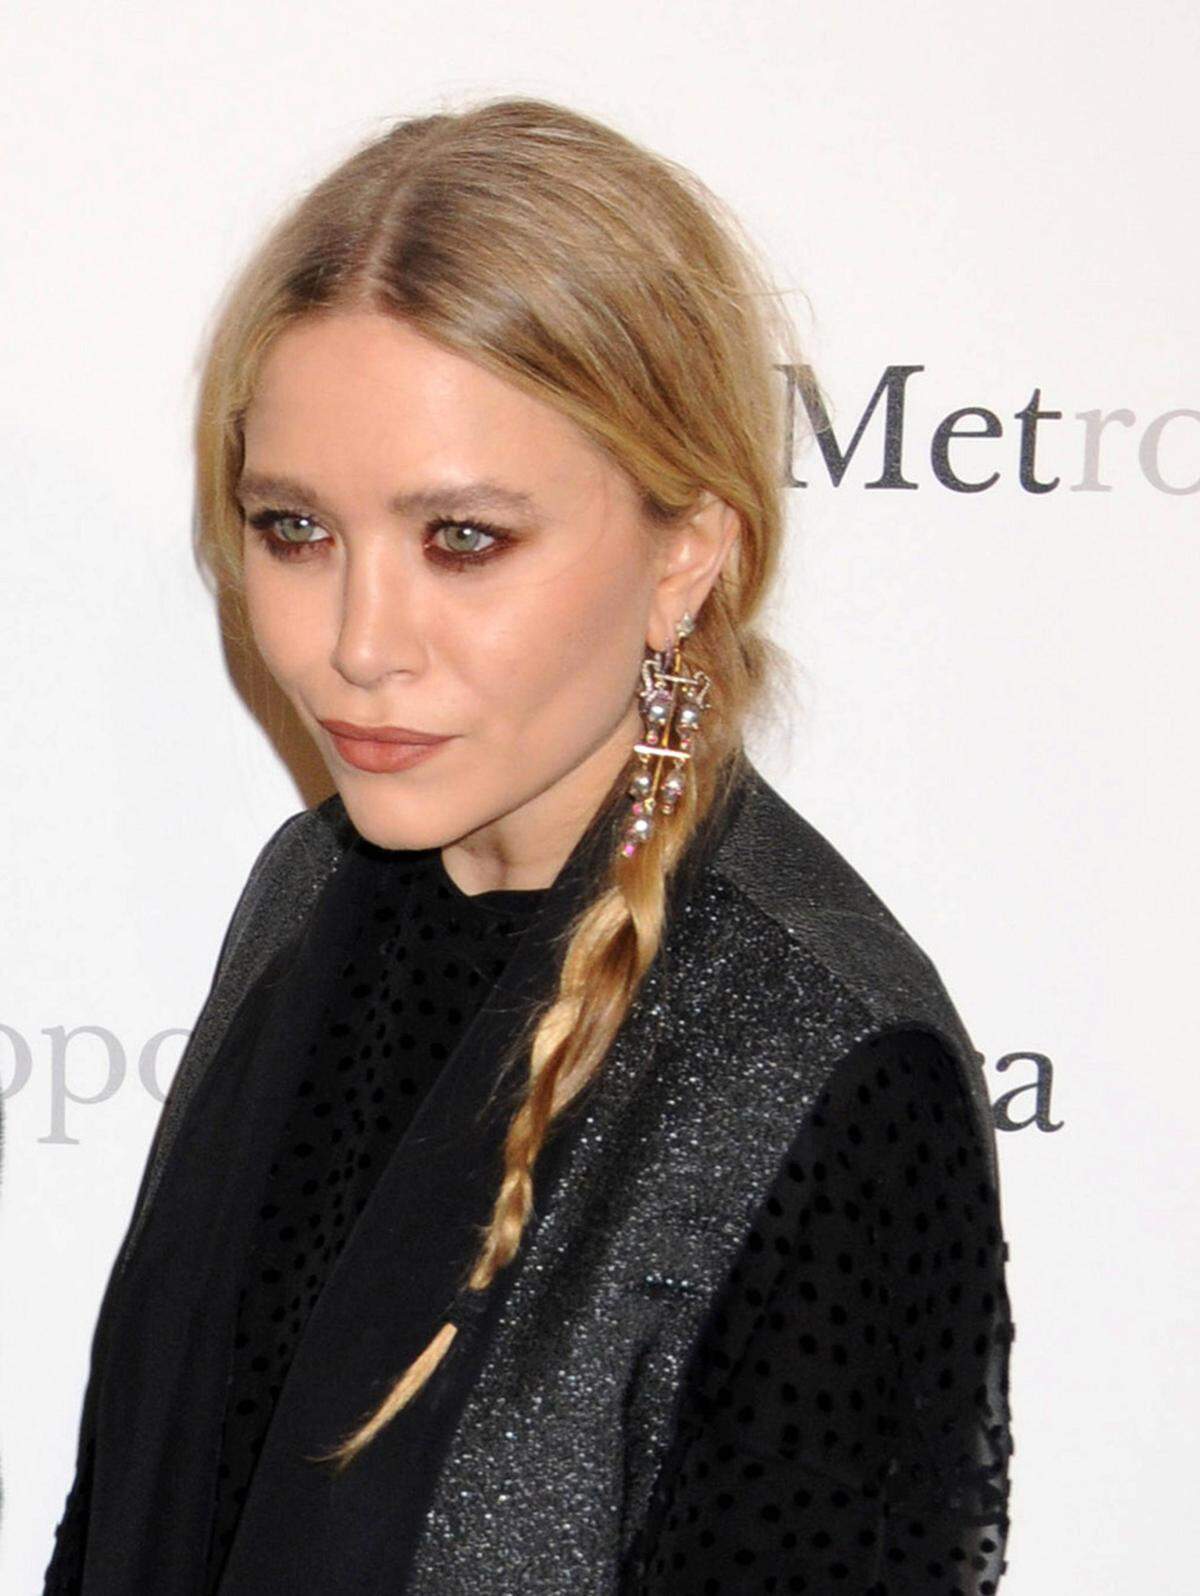 Mary-Kate Olsen und ihr Zwillingsschwester Ashley haben sich von millionenschweren Kinderstars zu ernstzunehmenden Designern entwickelt.